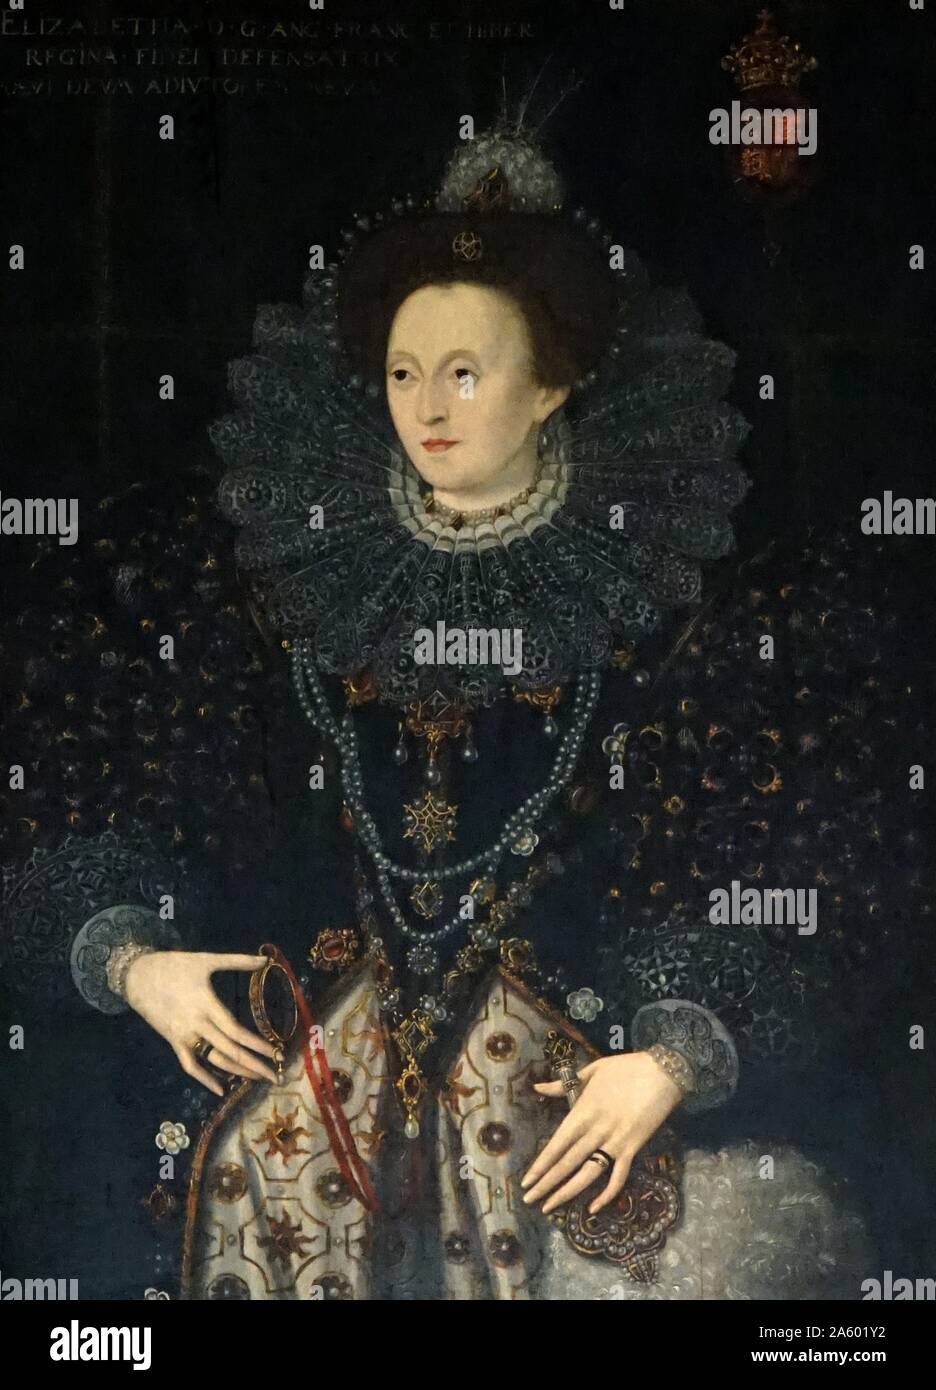 Ritratto della Regina Elisabetta I d'Inghilterra regnò 1558-1603. Xvi secolo, artista sconosciuto. Charlecote House; Warwickshire, Inghilterra Foto Stock